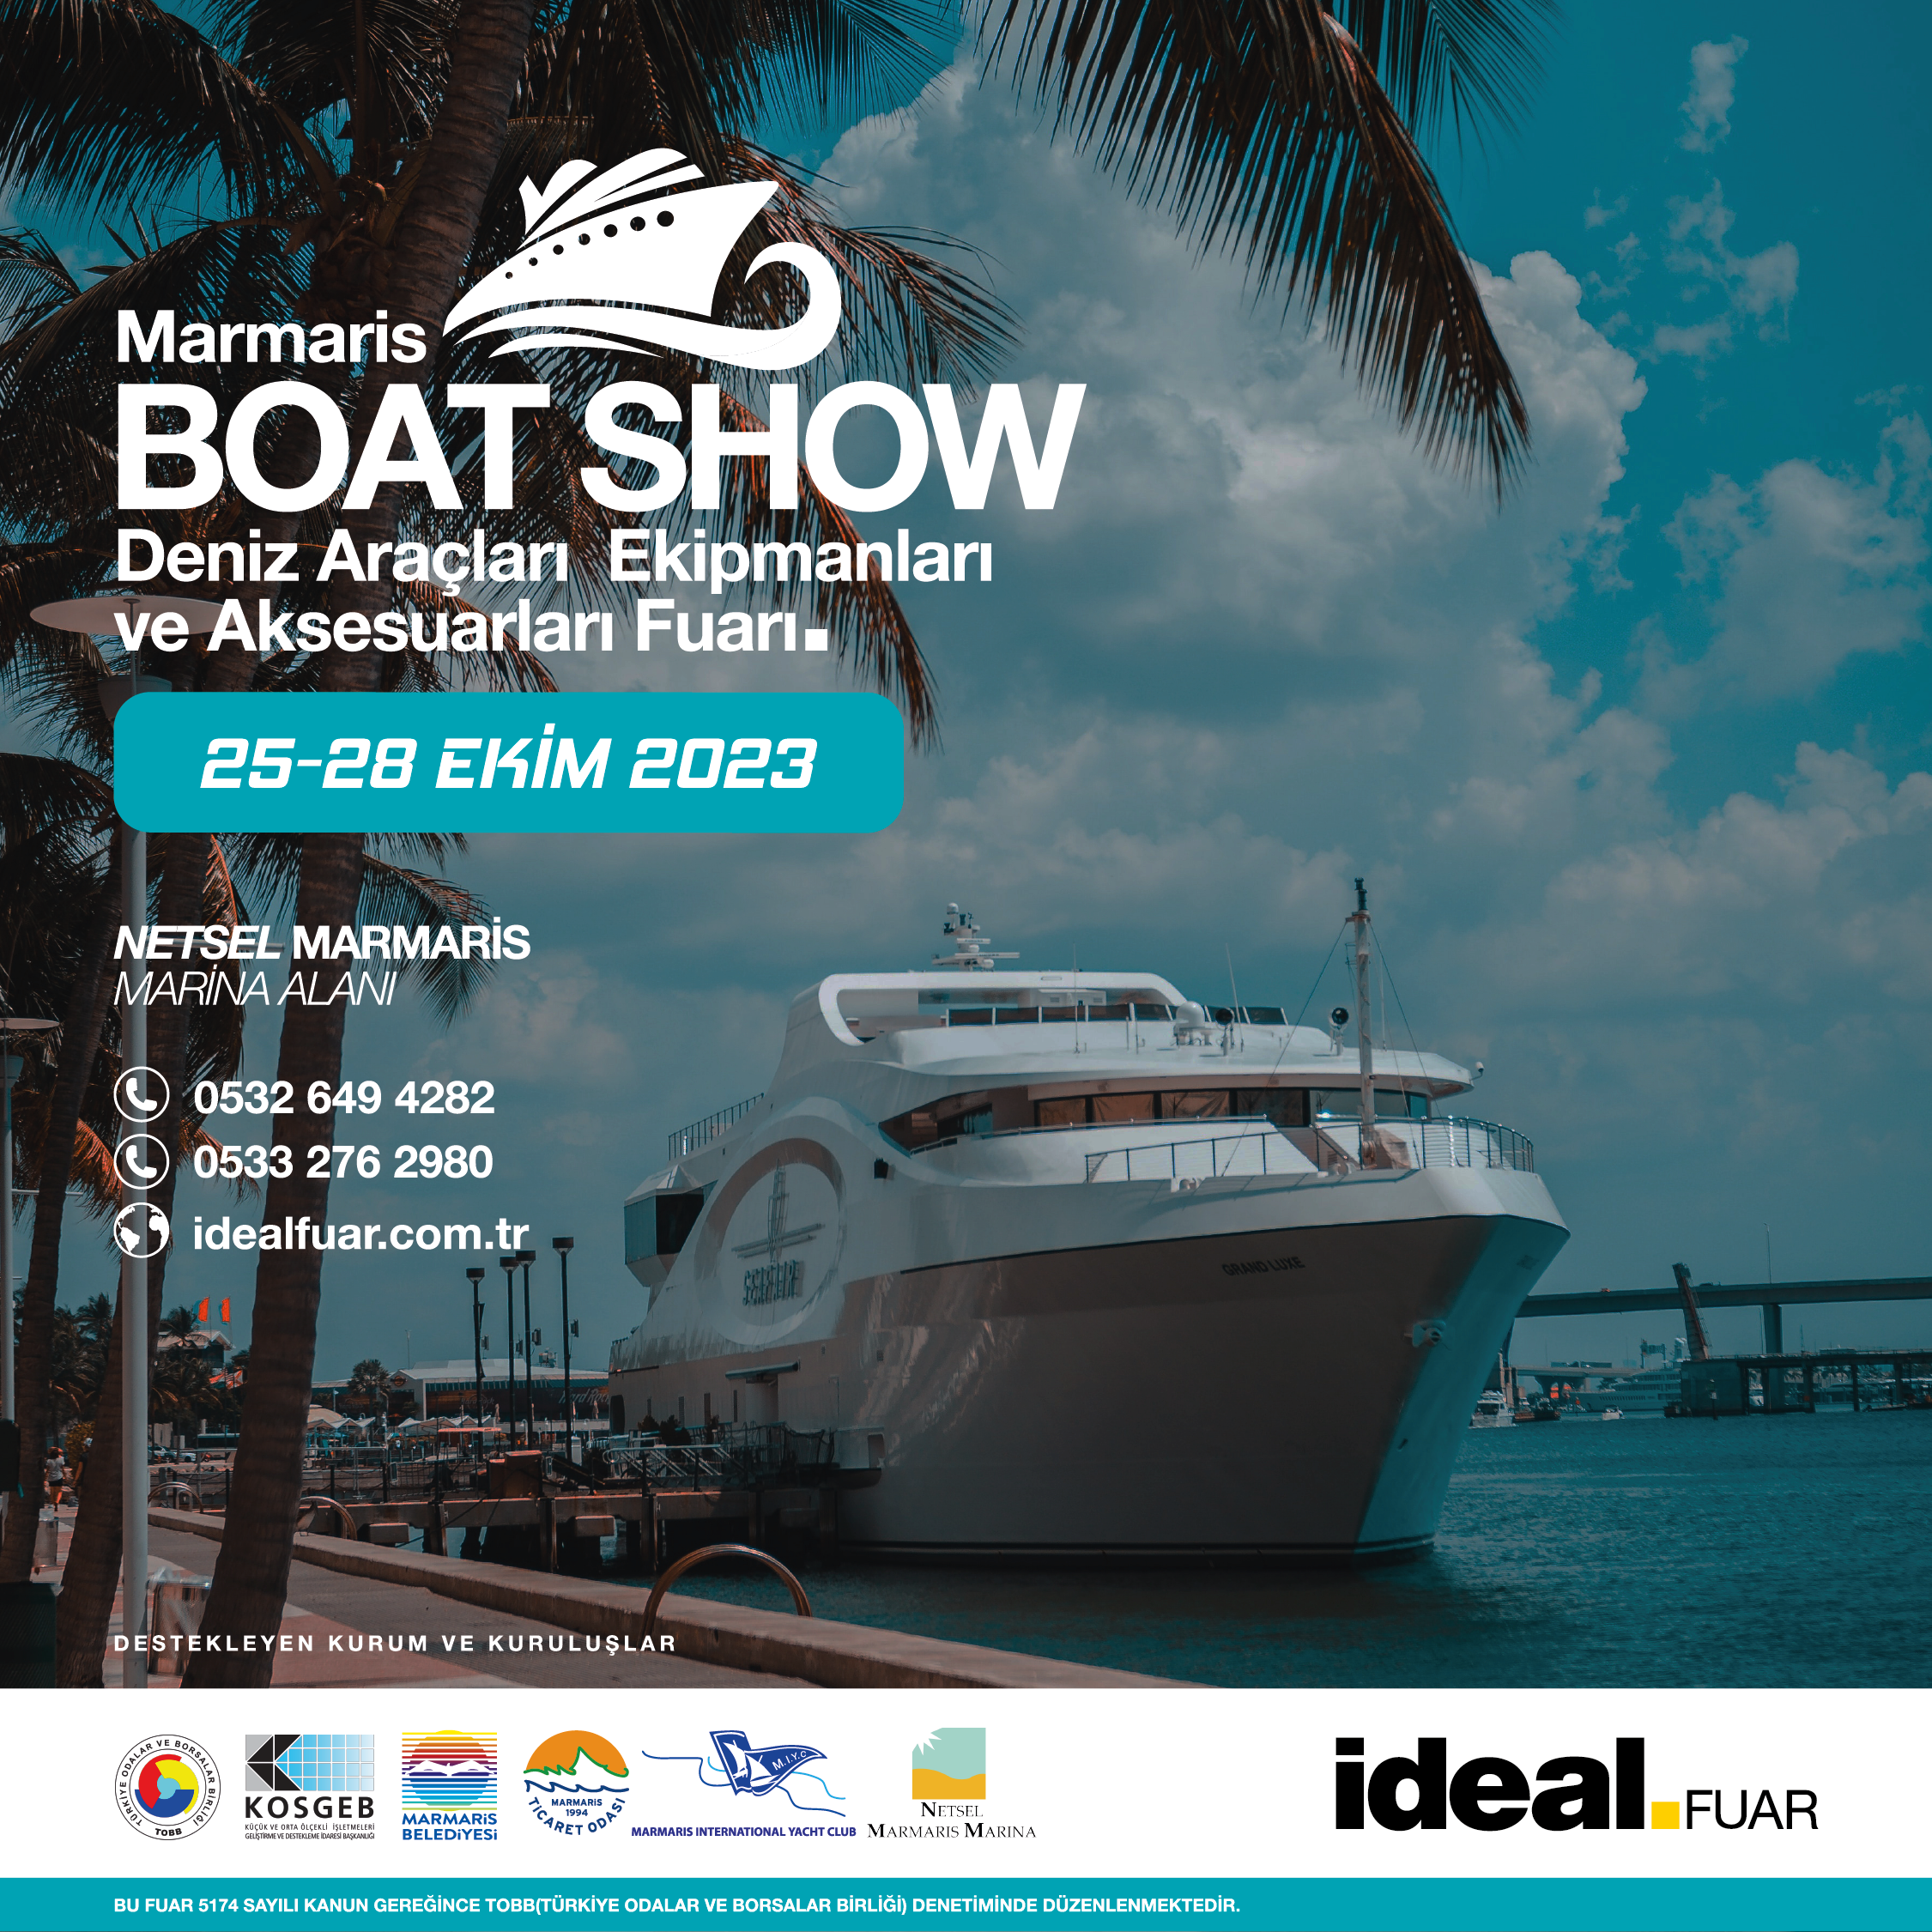 Marmaris Boat Show, Setur Netsel Marmaris Marina’da   Kapılarını Açıyor